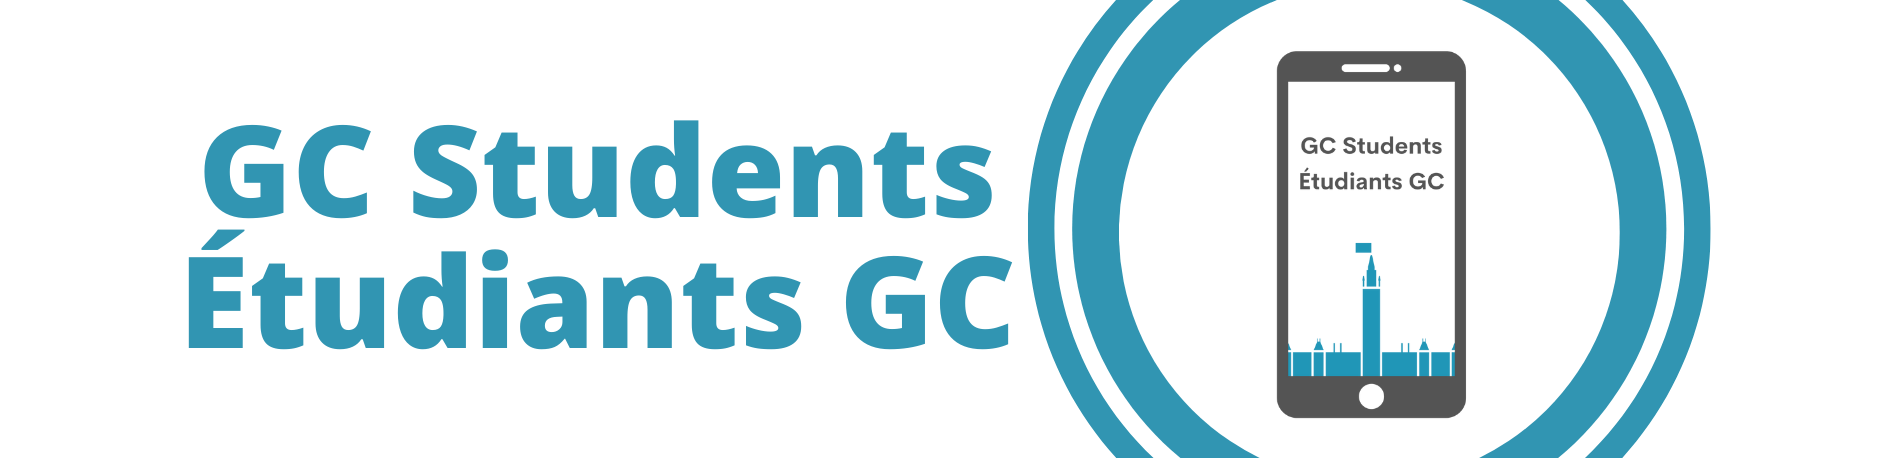 GC Students Logo - Logo d'Étudiants GC